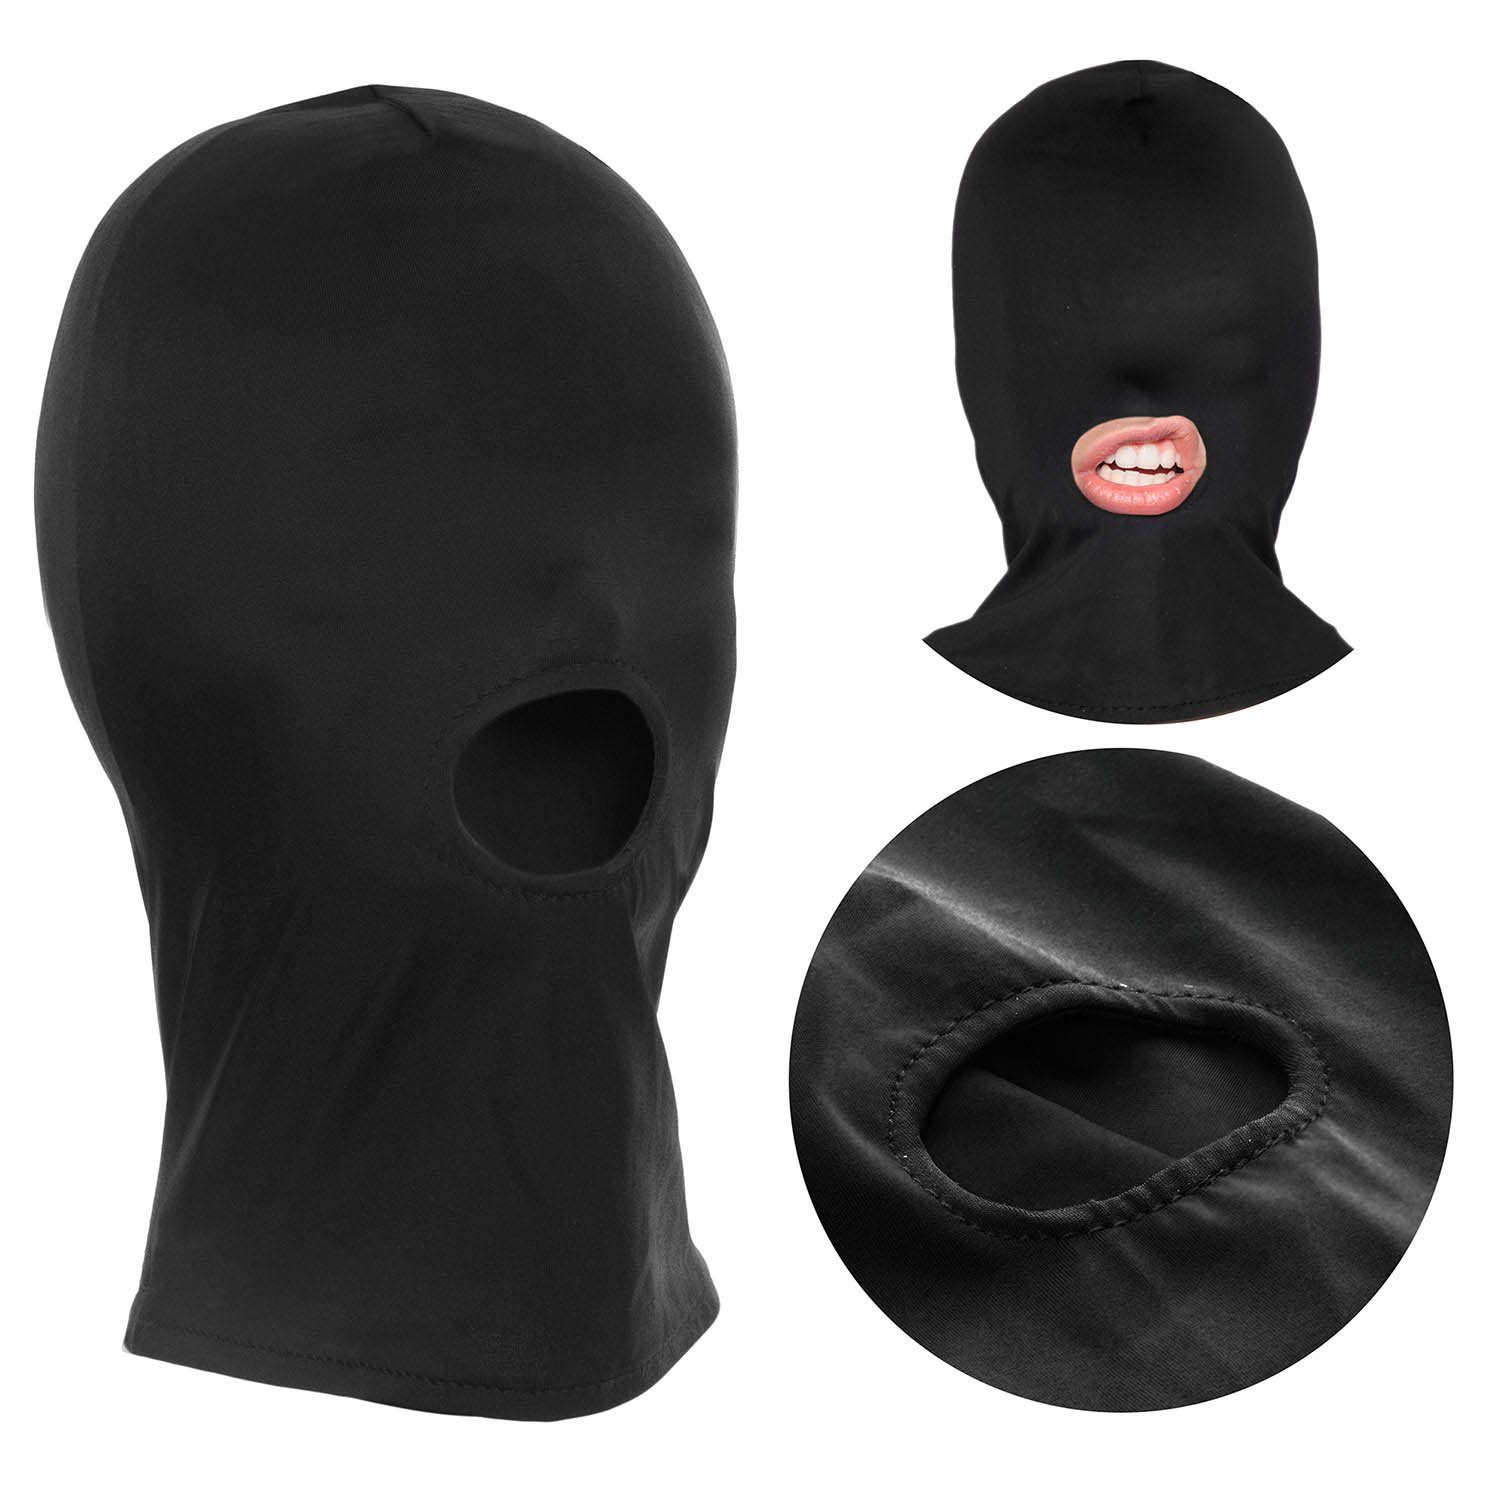 & Erotik-Maske BDSM Fetisch Maske Erotische Bondage Goods+Gadgets Maske,